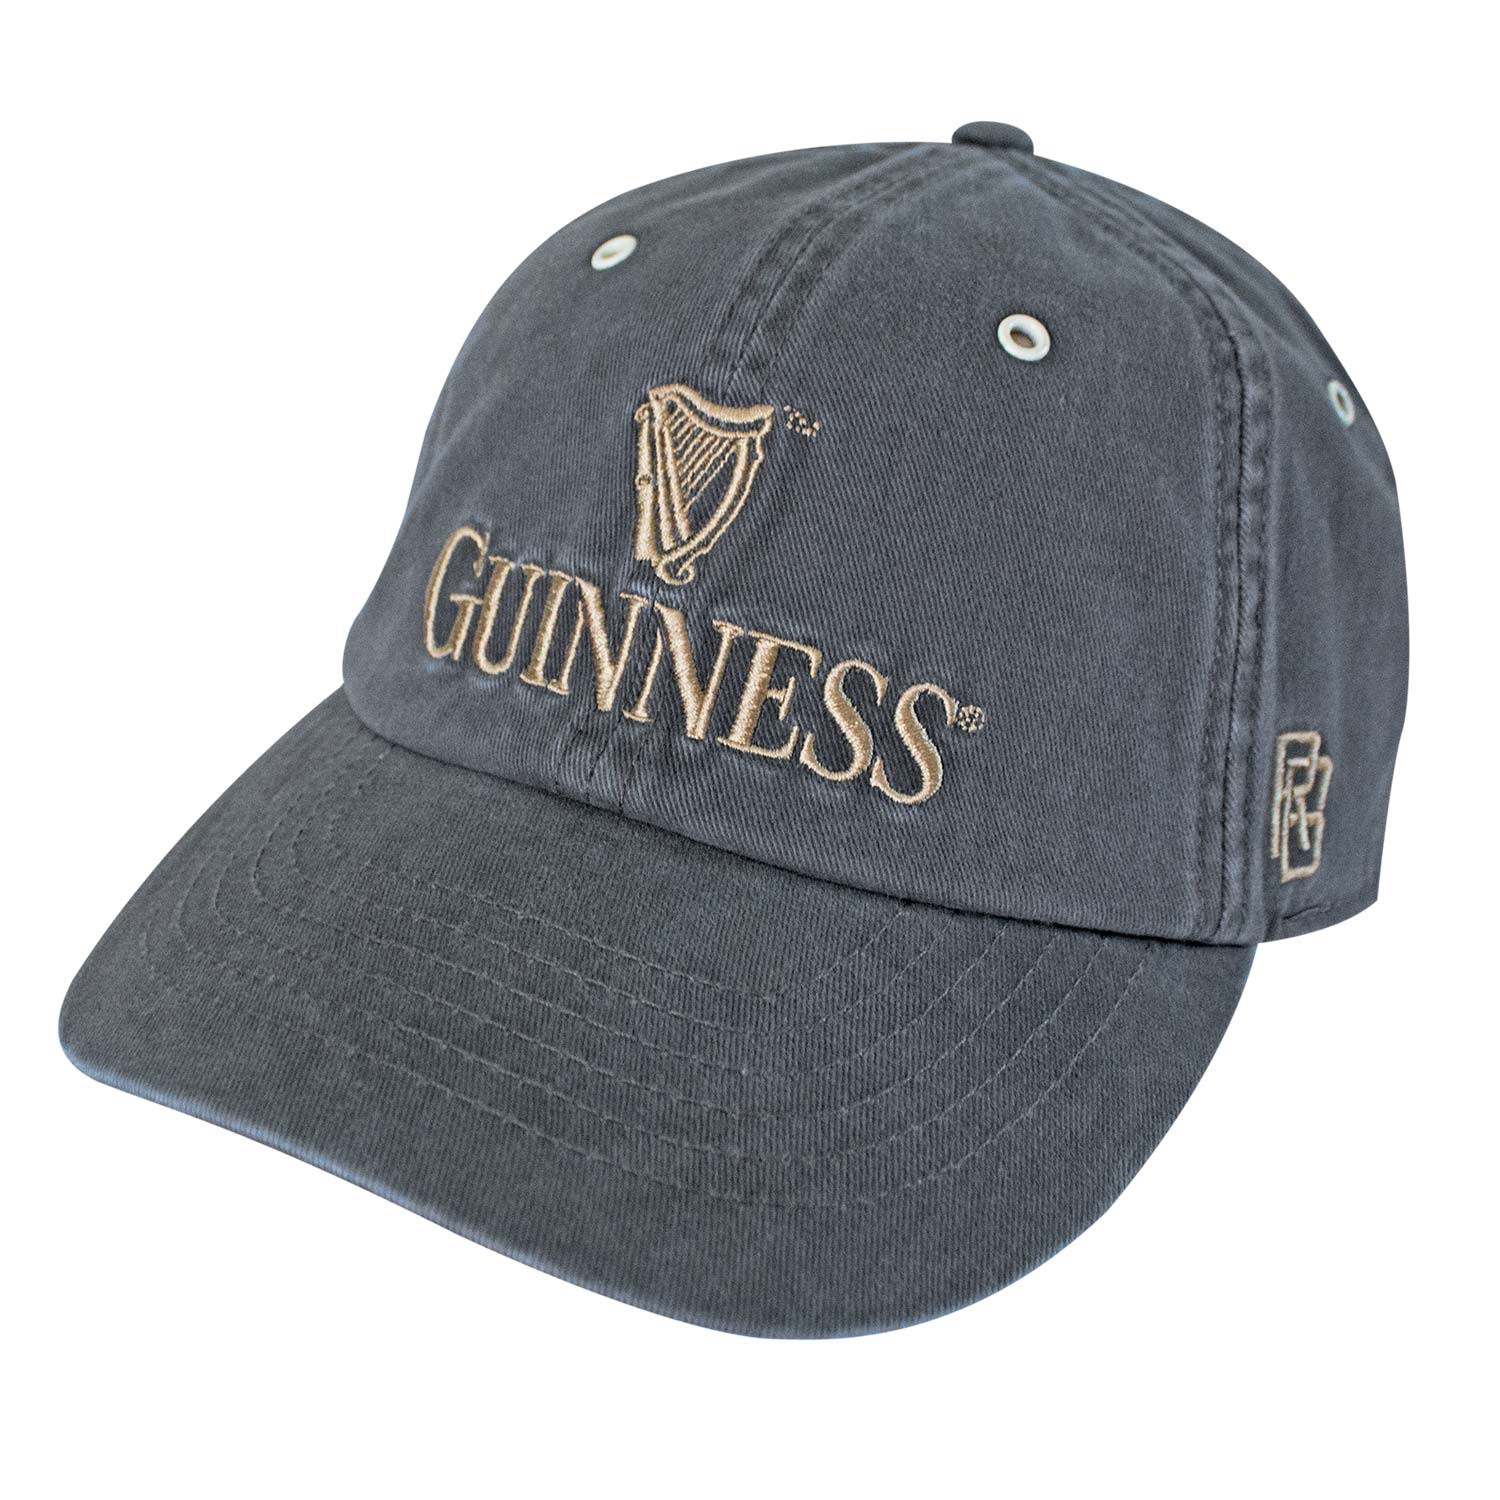 Guinness Retro Brand Men's Gray Hat